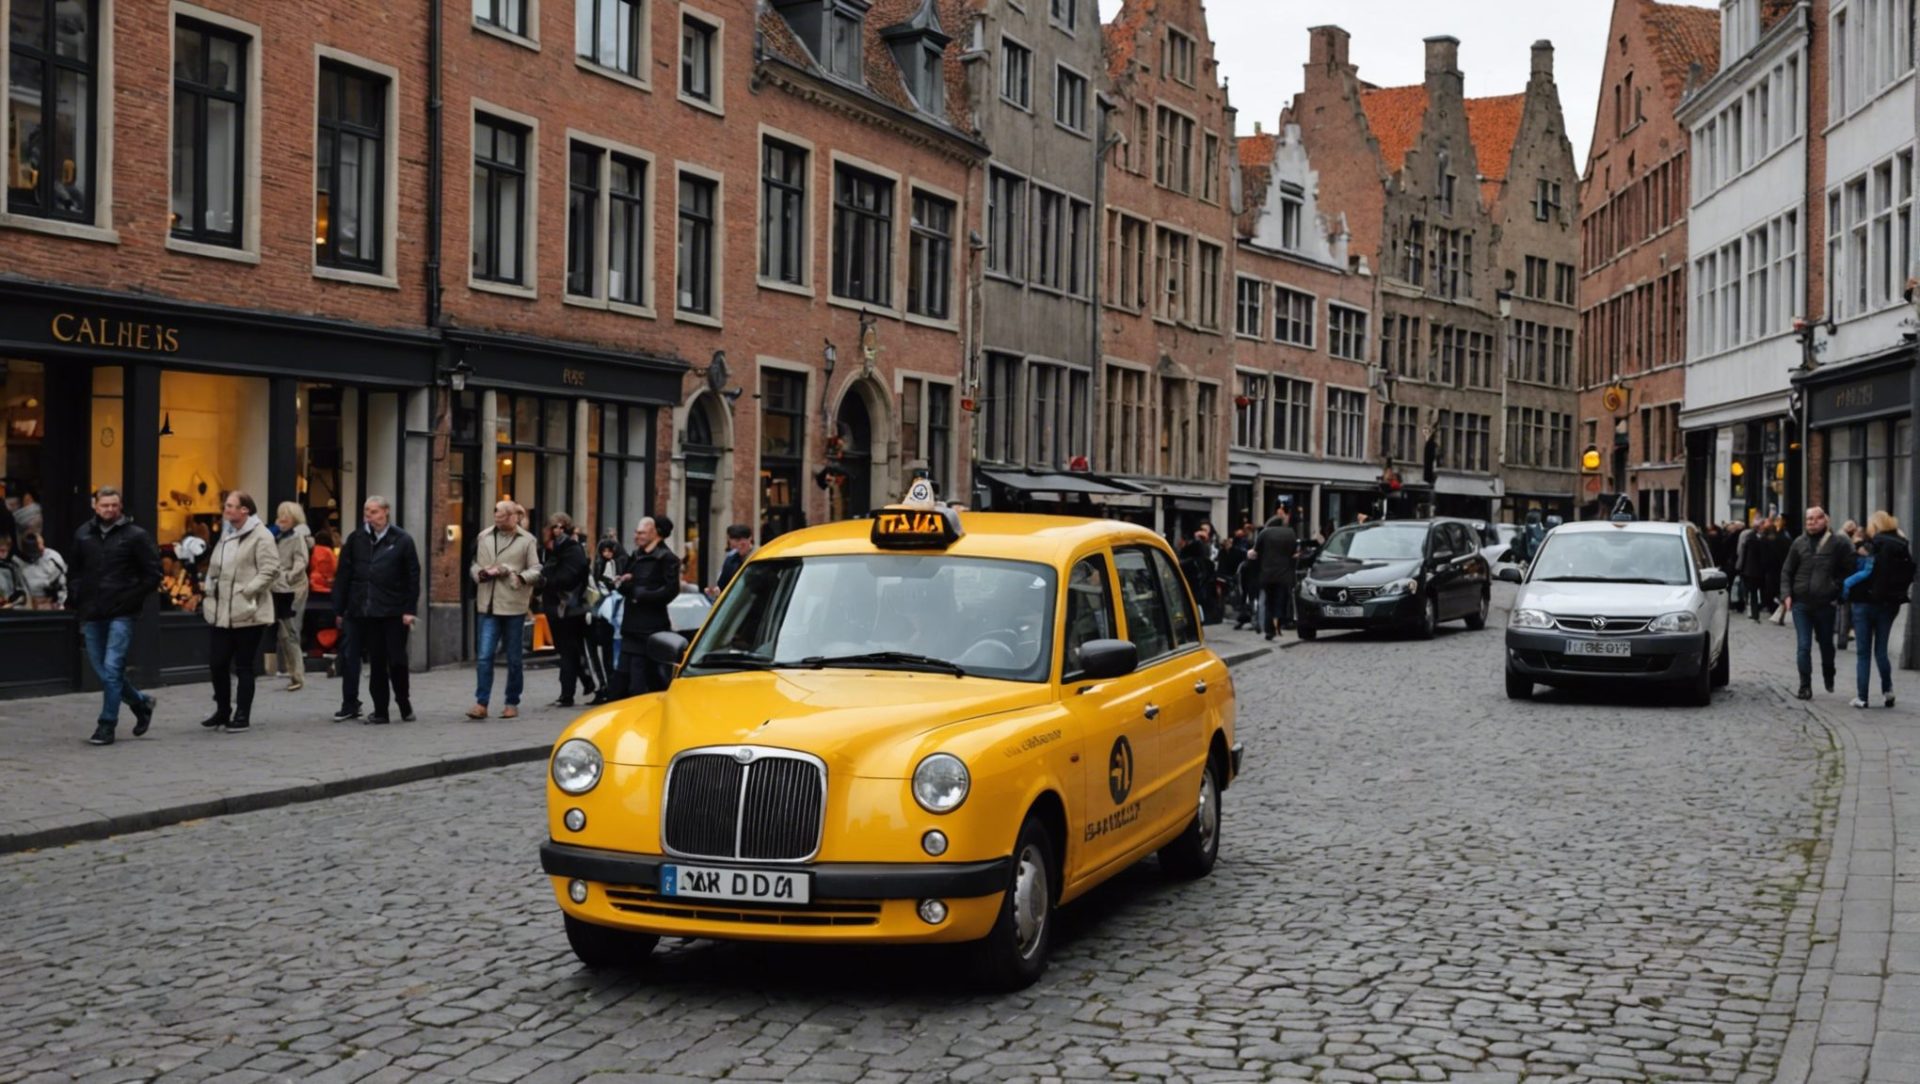 découvrez comment se déplacer en taxi à bruges, les tarifs, les lieux desservis et les conseils pour un trajet agréable dans la ville historique de bruges.